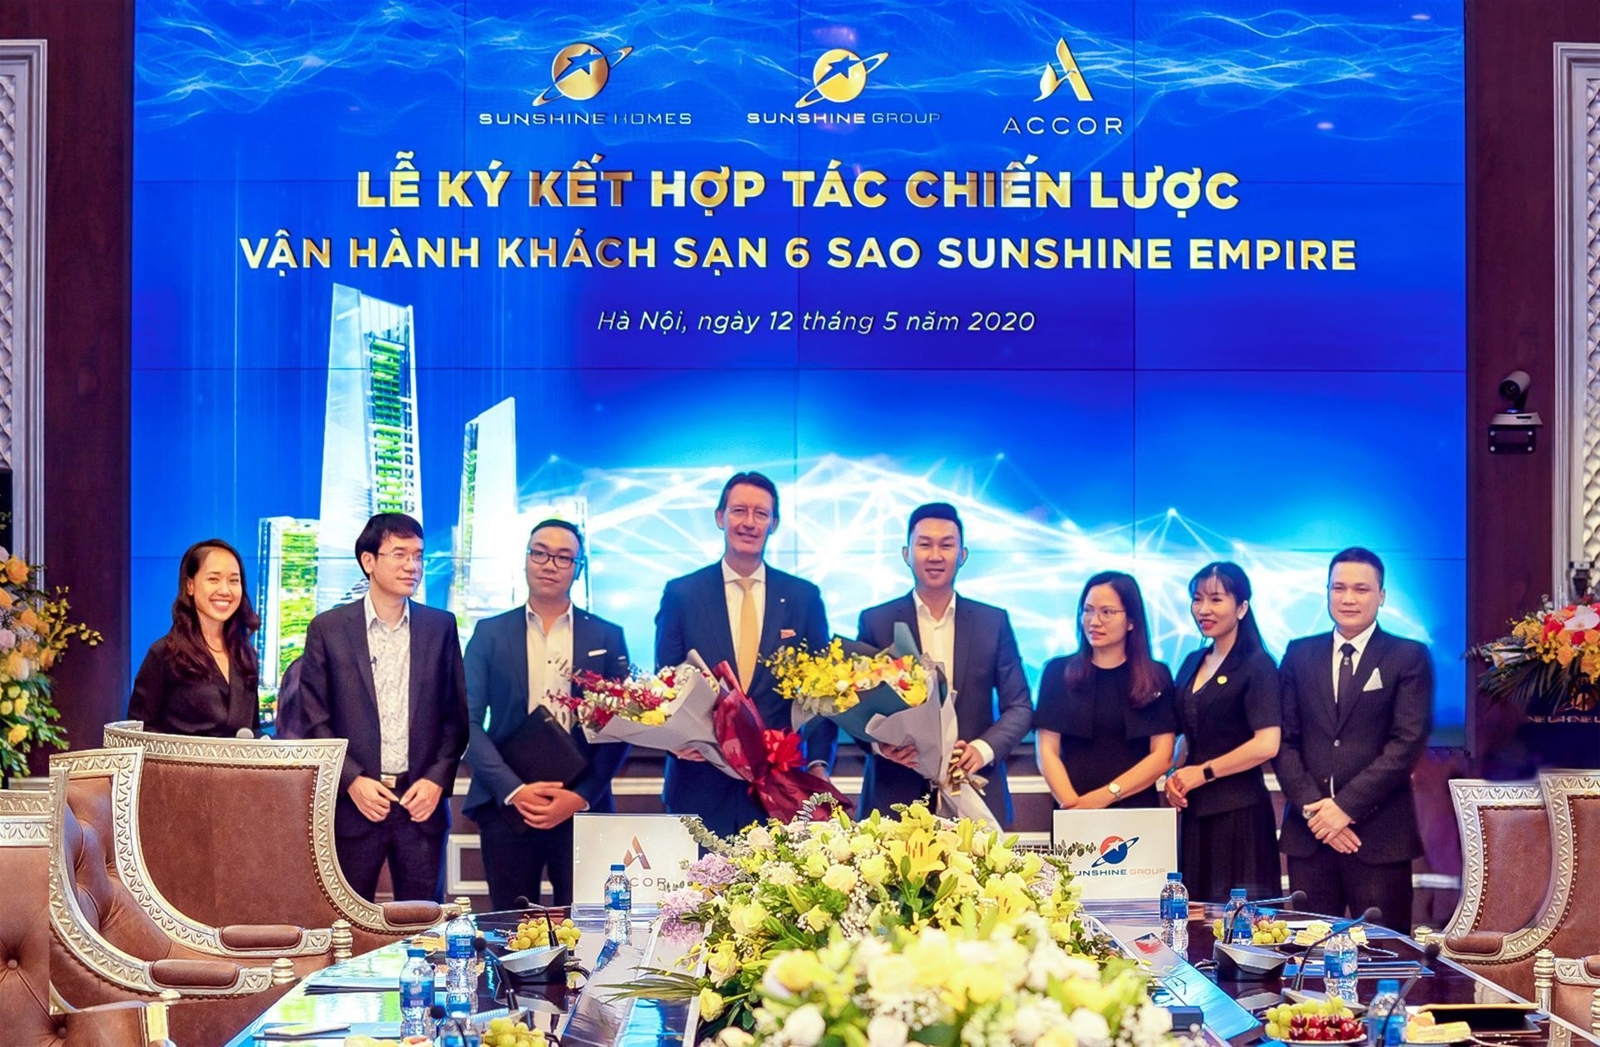 Lễ ký kết hợp tác chiến lược và vận hành khách sạn siêu sang Sunshine Empire giữa Tập đoàn Sunshine và Tập đoàn Accor.